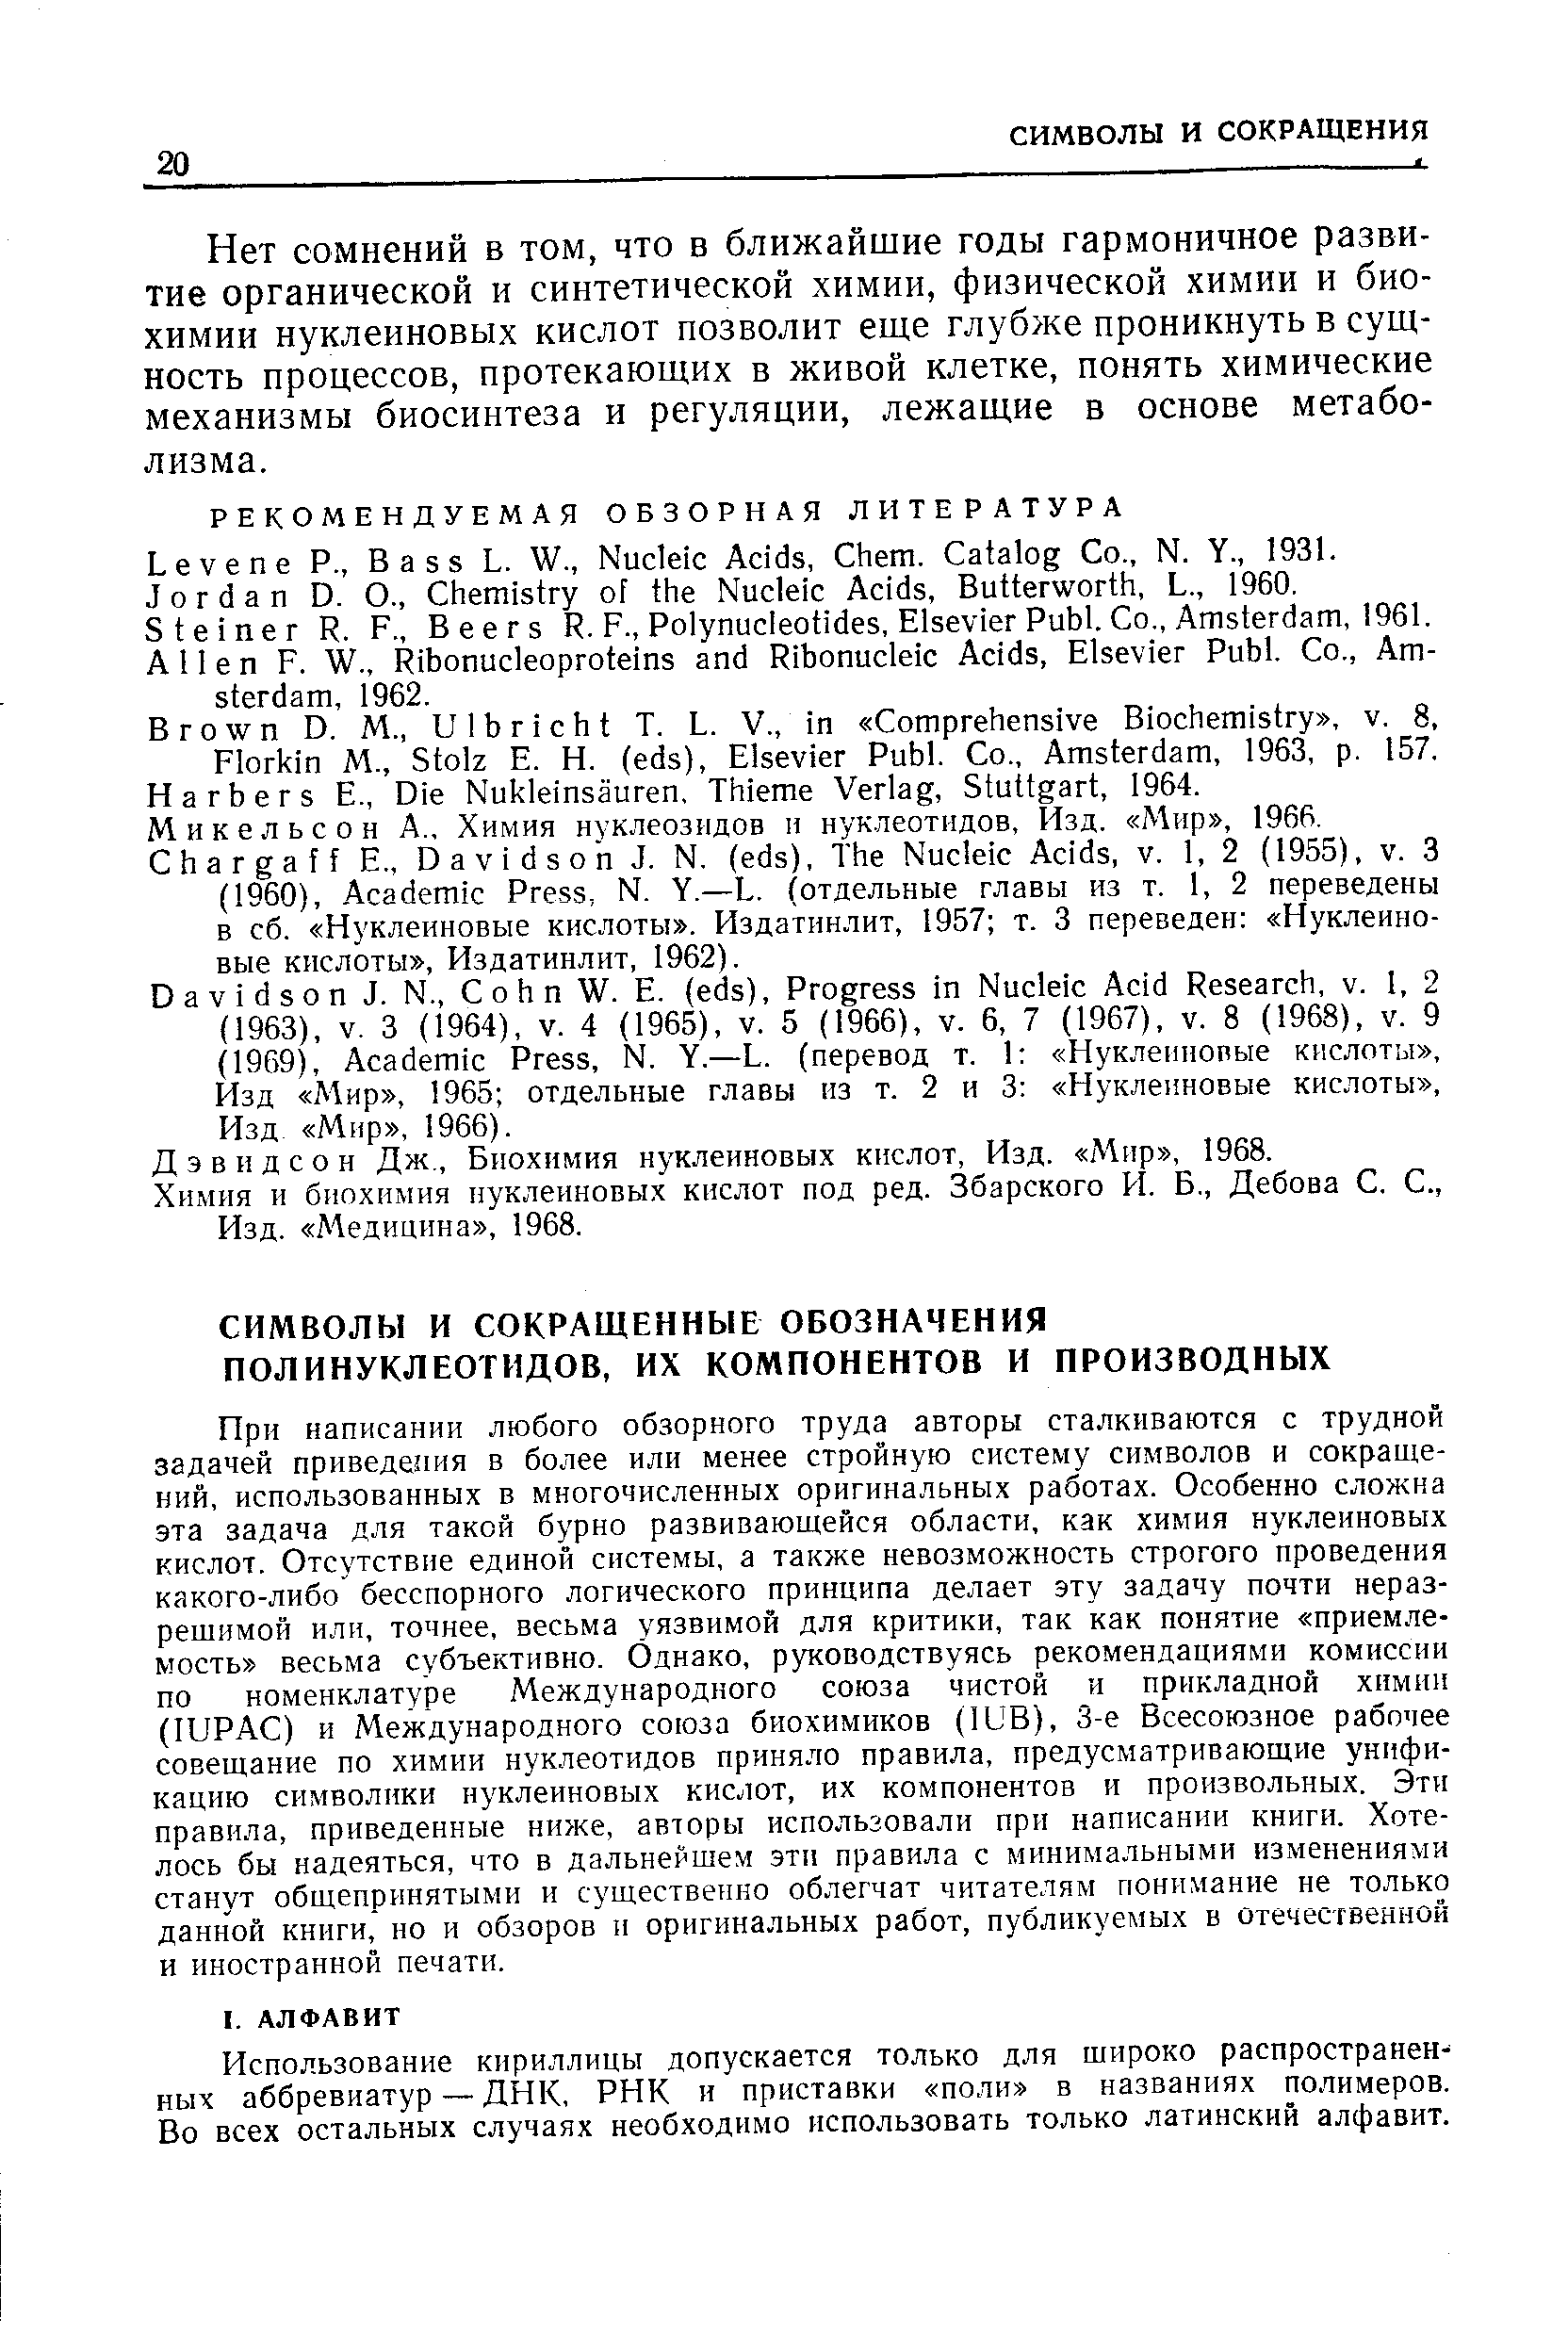 Дэвидсон Дж., Биохимия нуклеиновых кислот. Изд. Мир , 1968.